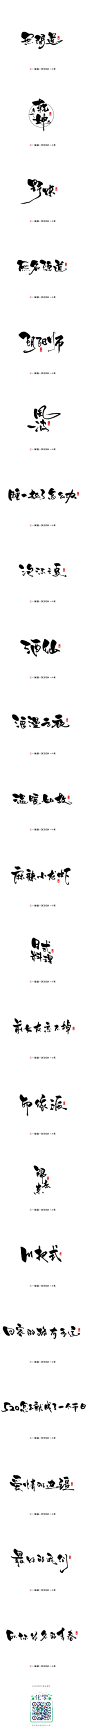 小骚手书-随写江湖体-字体传奇网-中国首个字体品牌设计师交流网